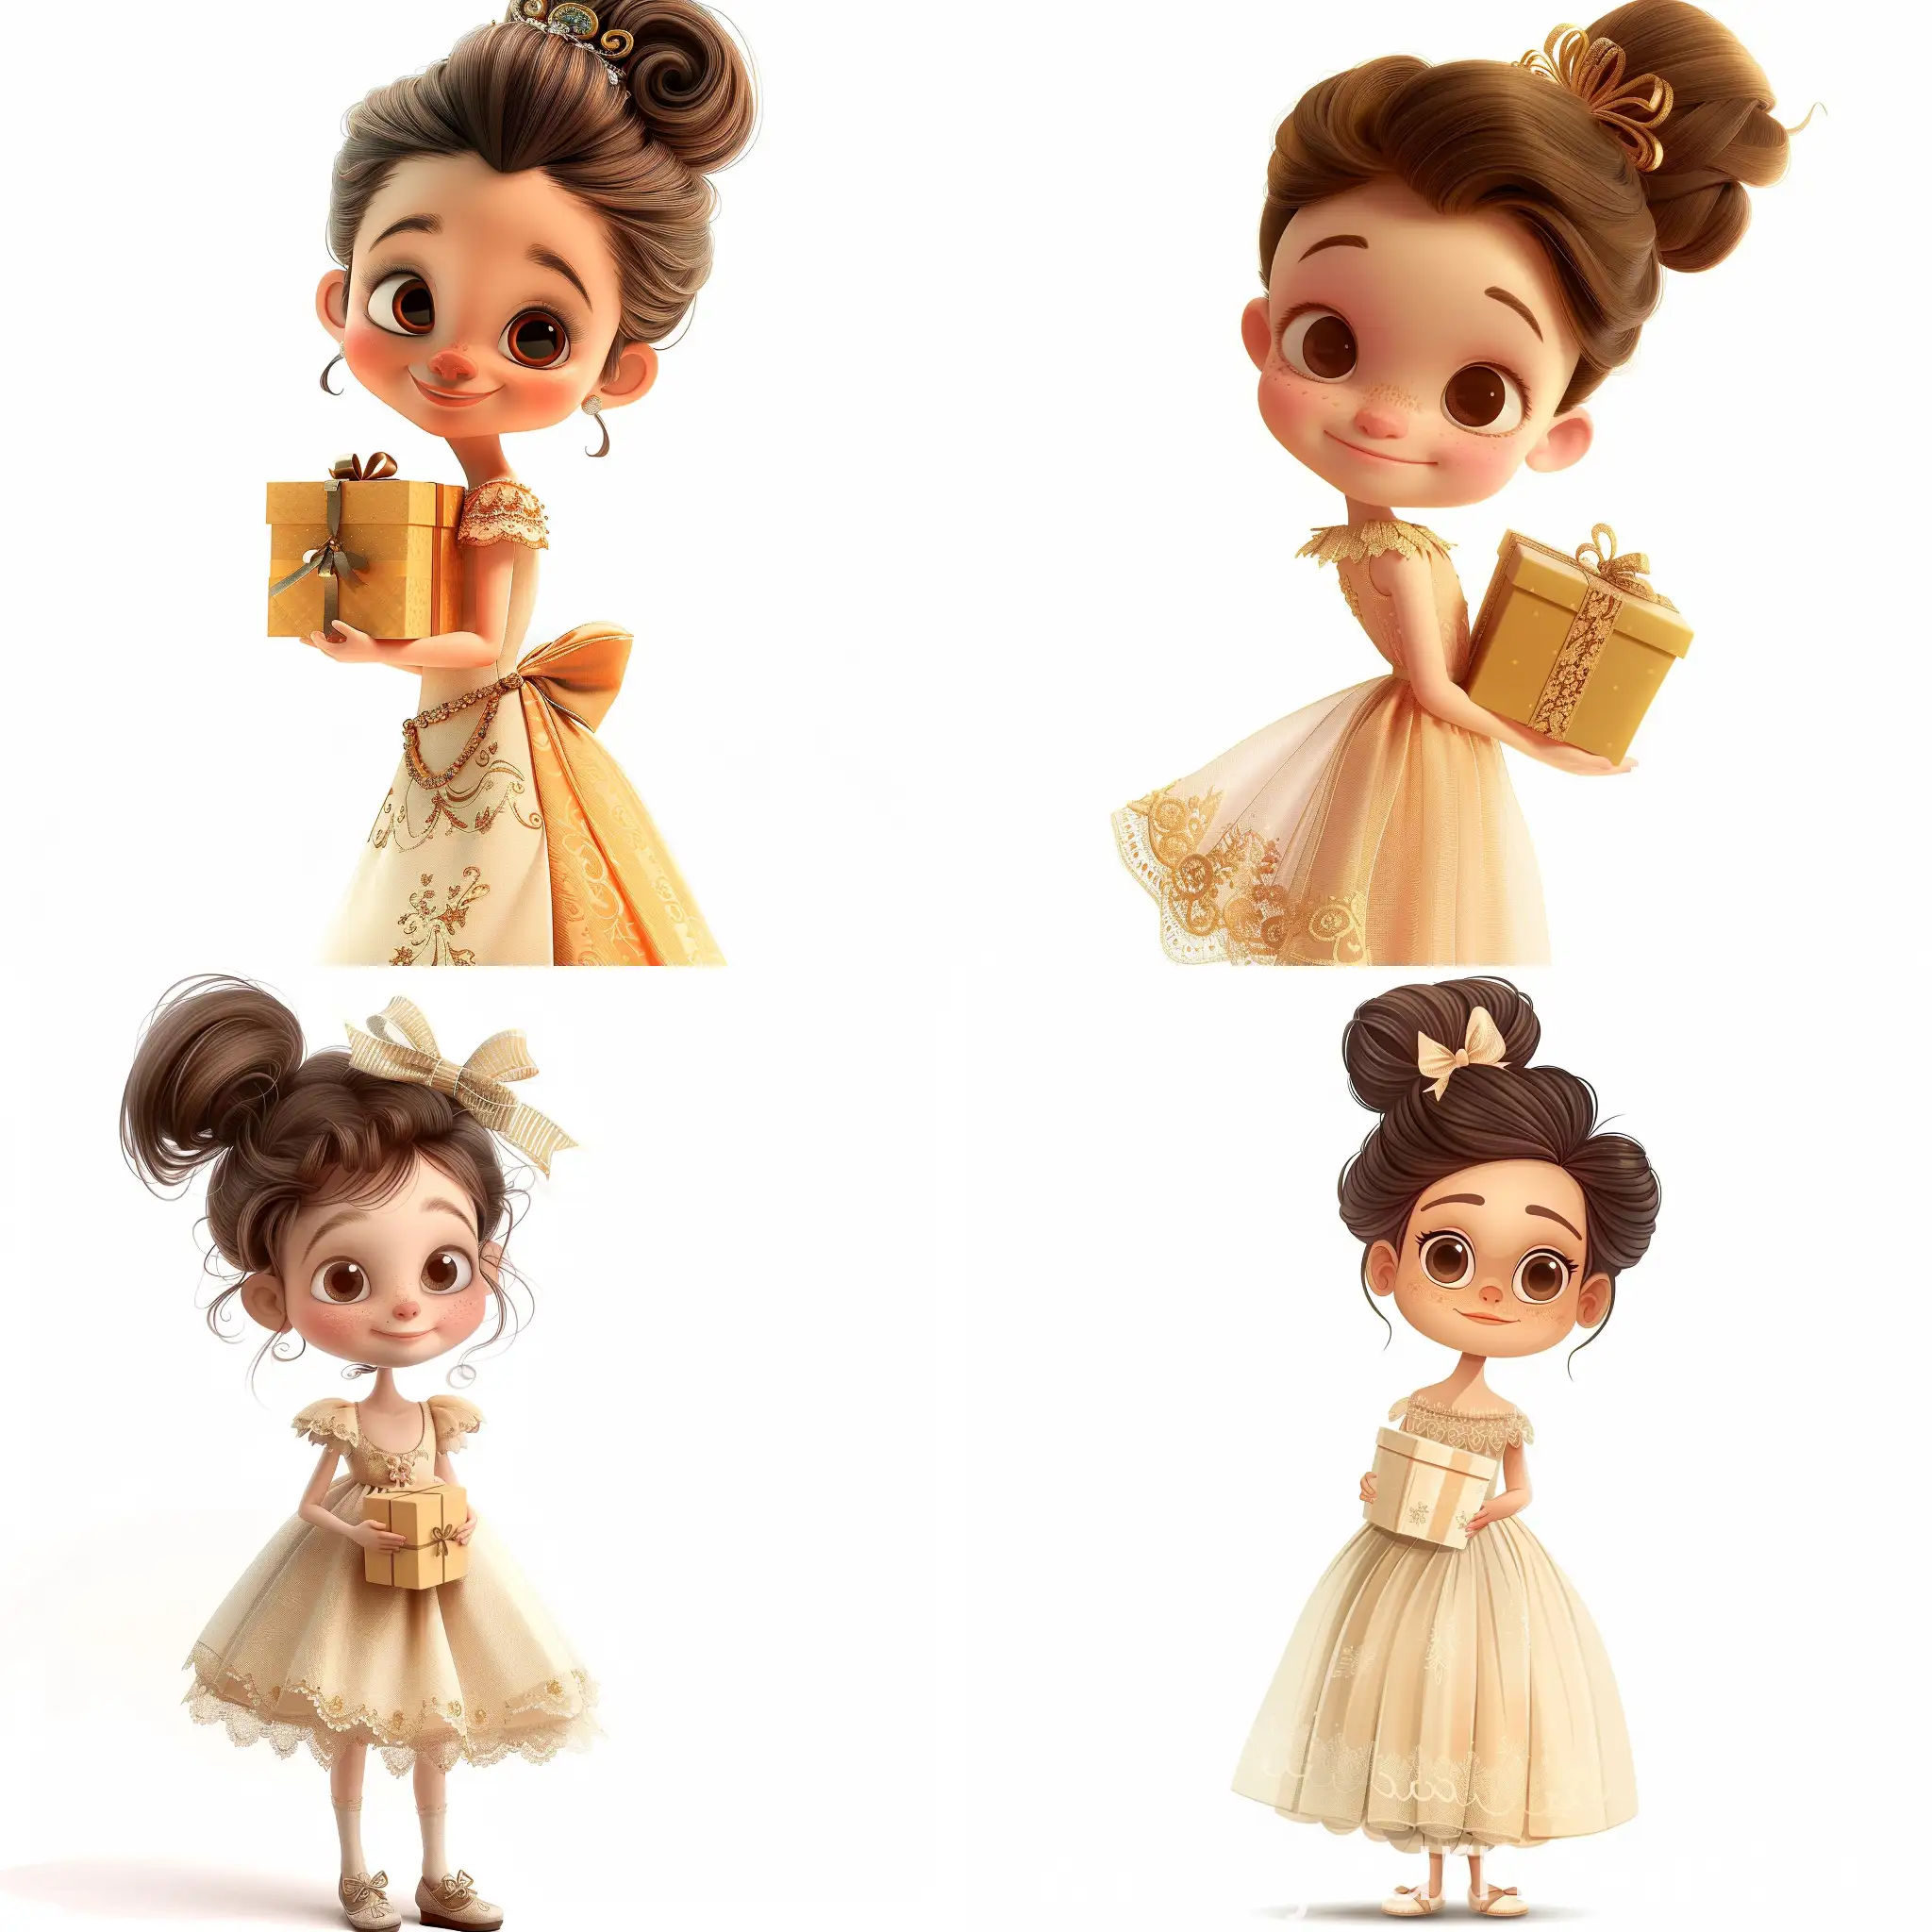 Joyful-Girl-with-Gift-Box-Adorable-Cartoon-Character-Portrait